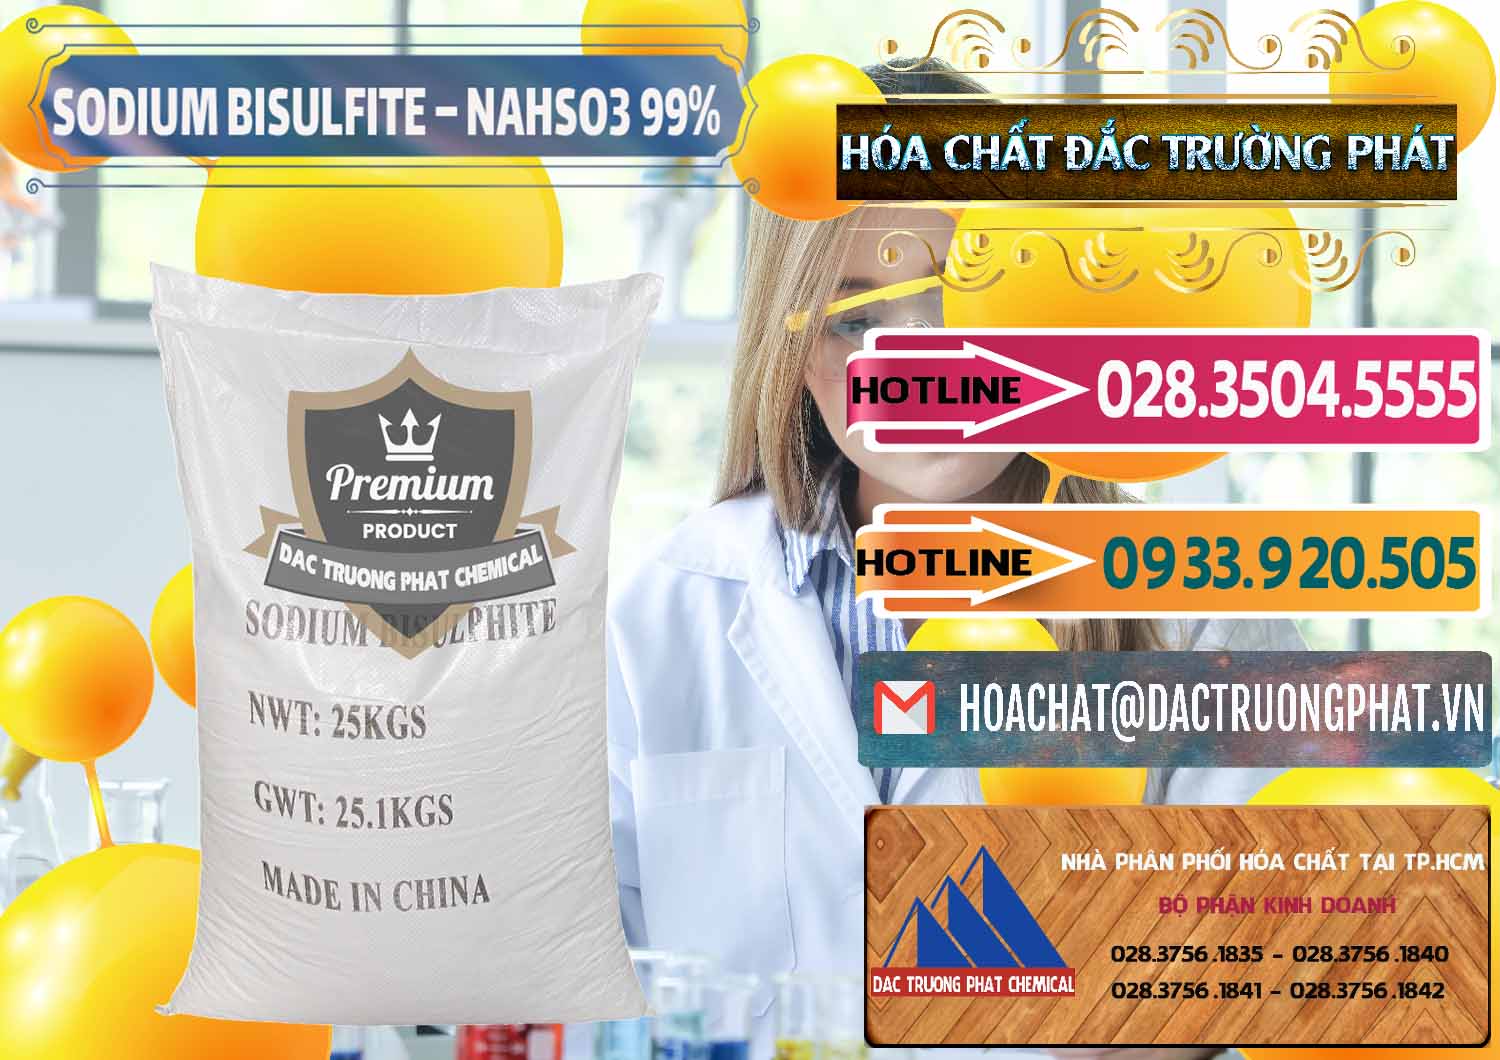 Đơn vị chuyên bán - cung cấp Sodium Bisulfite – NAHSO3 Trung Quốc China - 0140 - Nhập khẩu và phân phối hóa chất tại TP.HCM - dactruongphat.vn